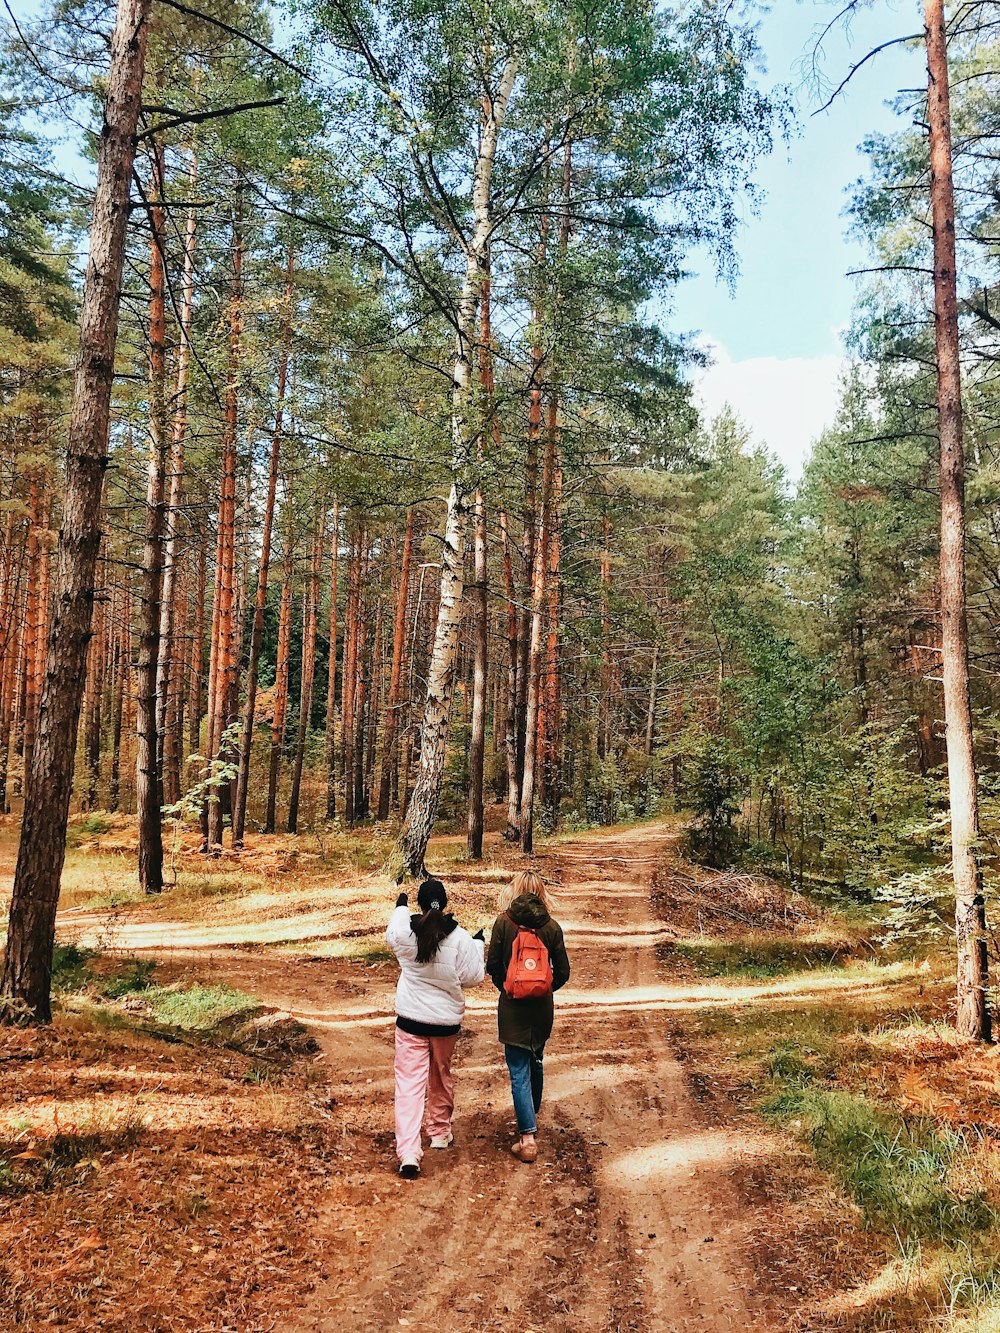 숲속의 비포장 도로를 걷고 있는 두 사람